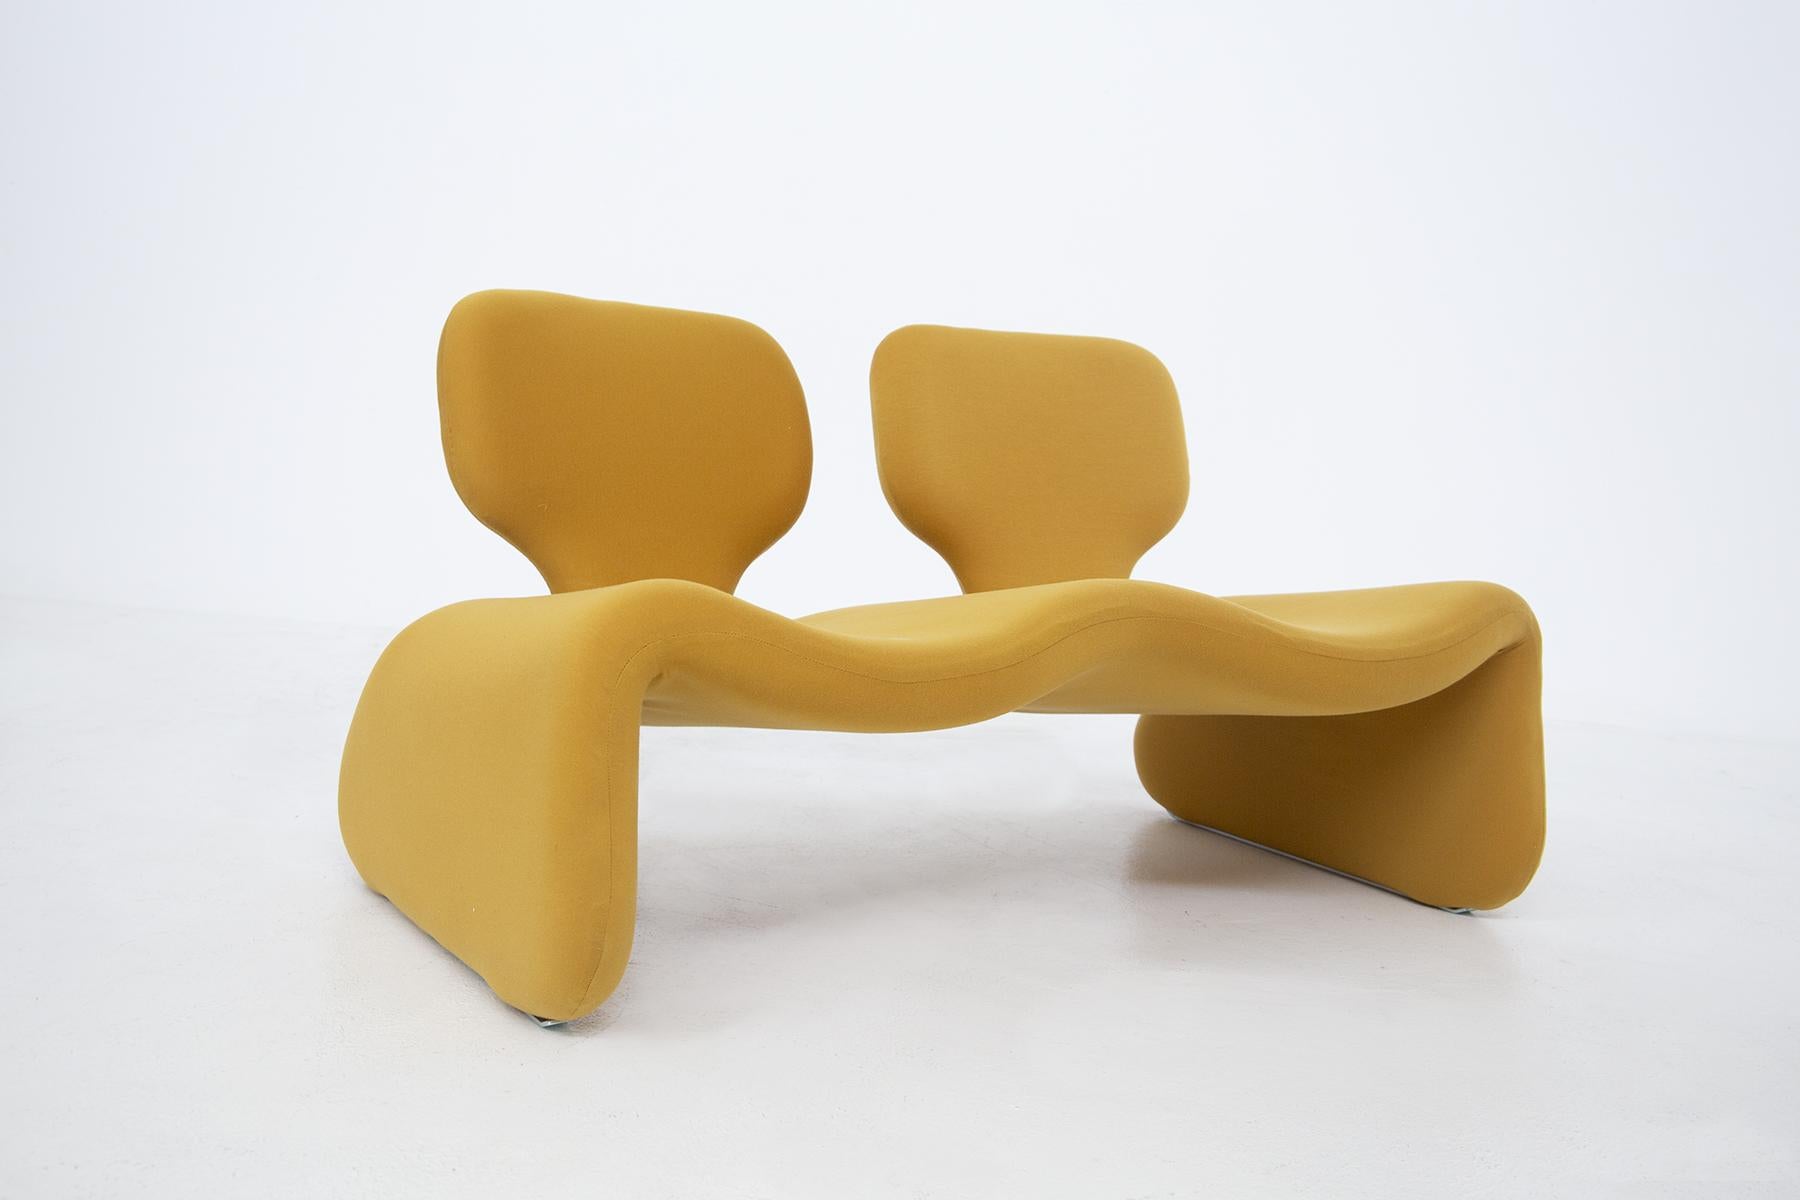 Zweisitziges Vintage-Sofa Djinn, entworfen von Olivier Mourgue 1965 für Airborne. Metallrahmen mit Schaumstoff gepolstert und mit gelbem Kvadrat Verlagsstoff bezogen. Die Füße haben Stahlkufen. Das Dschinn-Sofa, dessen Form von den Flaschengeistern